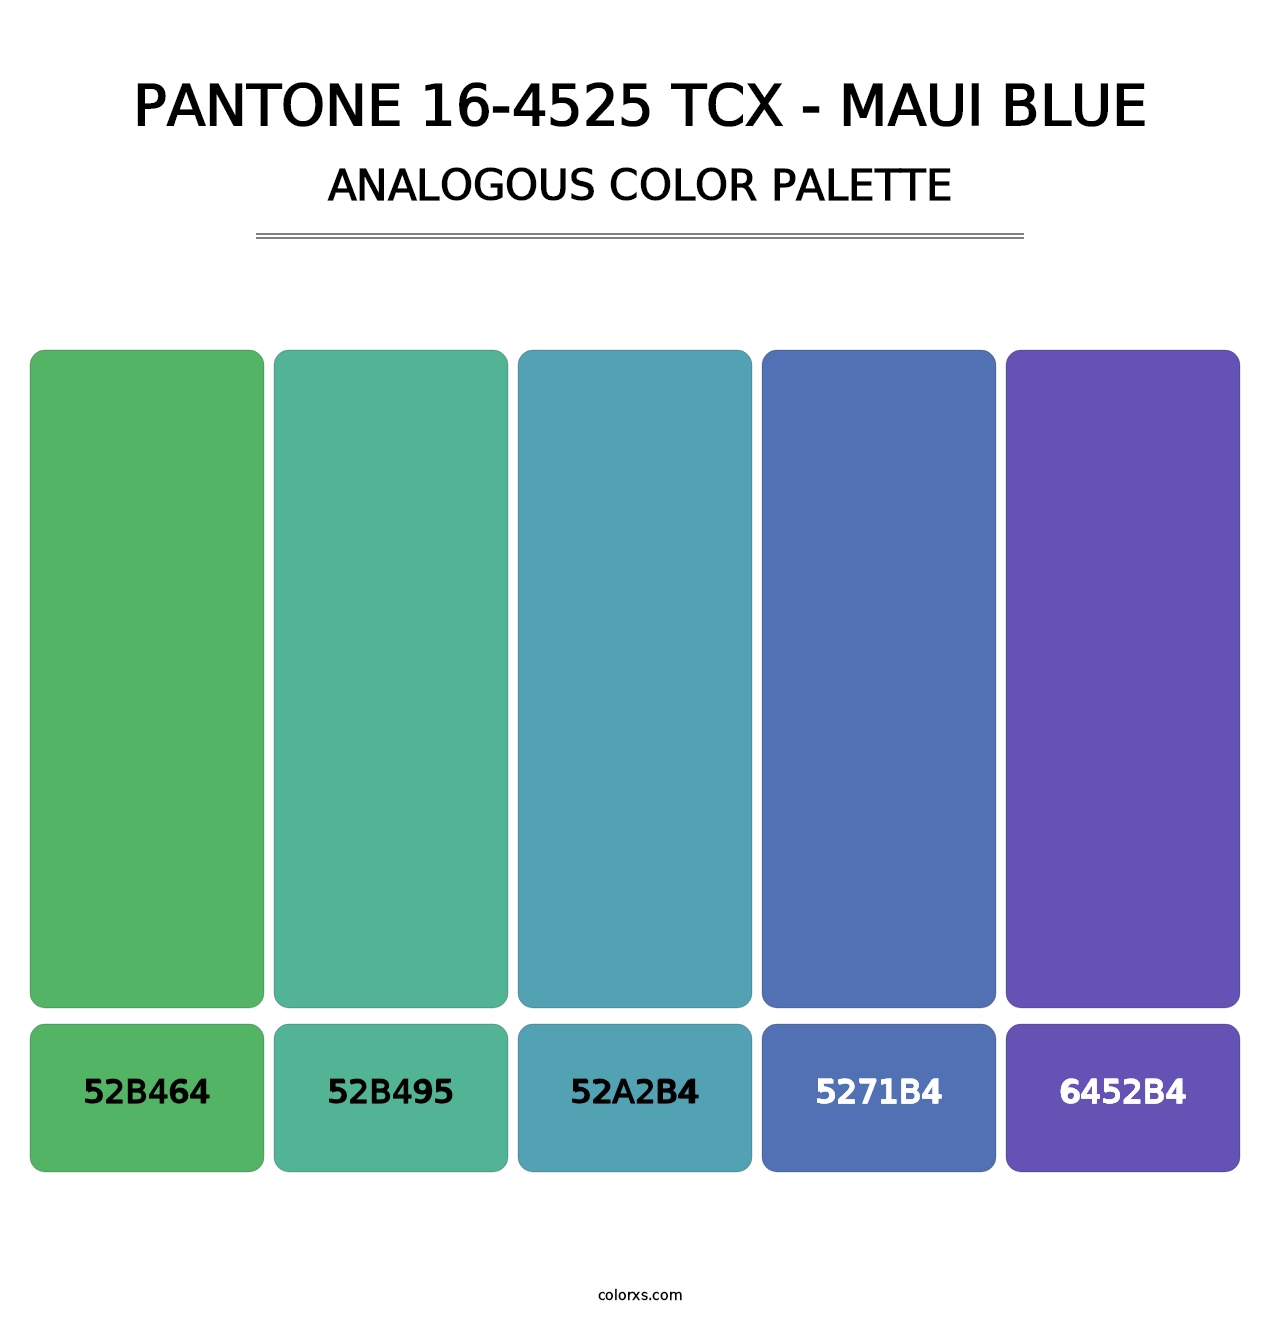 PANTONE 16-4525 TCX - Maui Blue - Analogous Color Palette